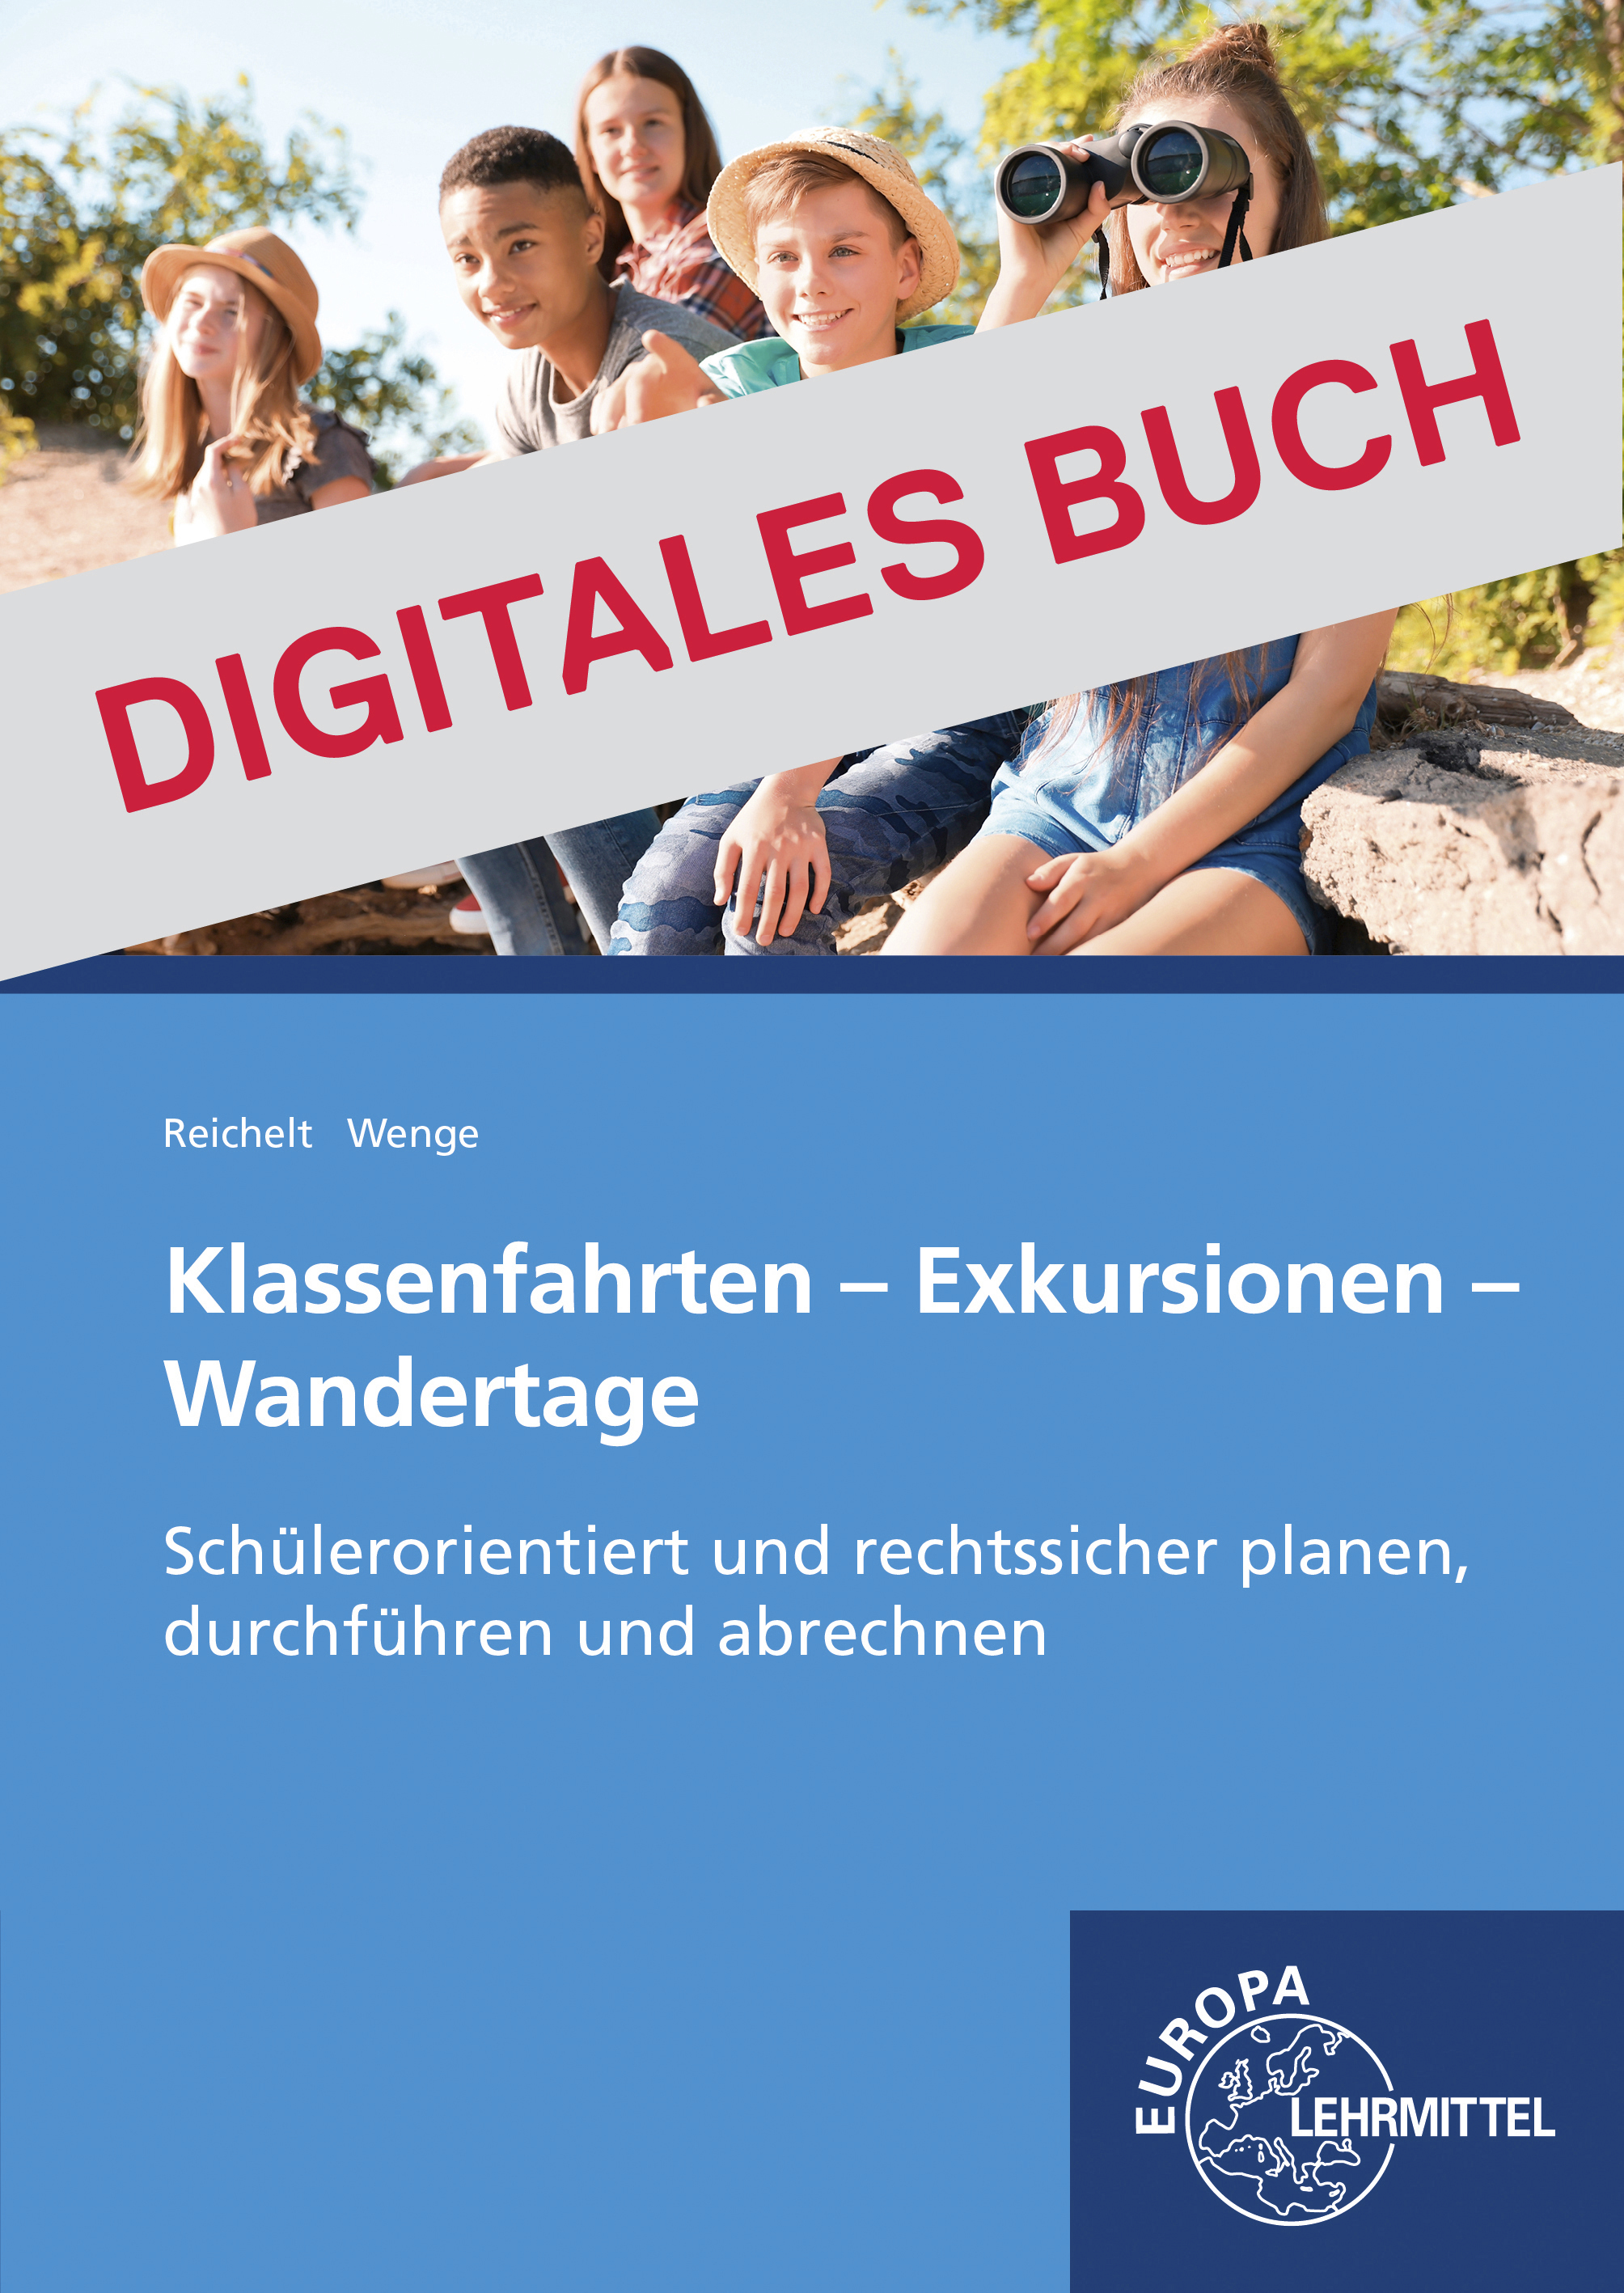 Klassenfahrten, Exkursionen, Wandertage - Digitales Buch